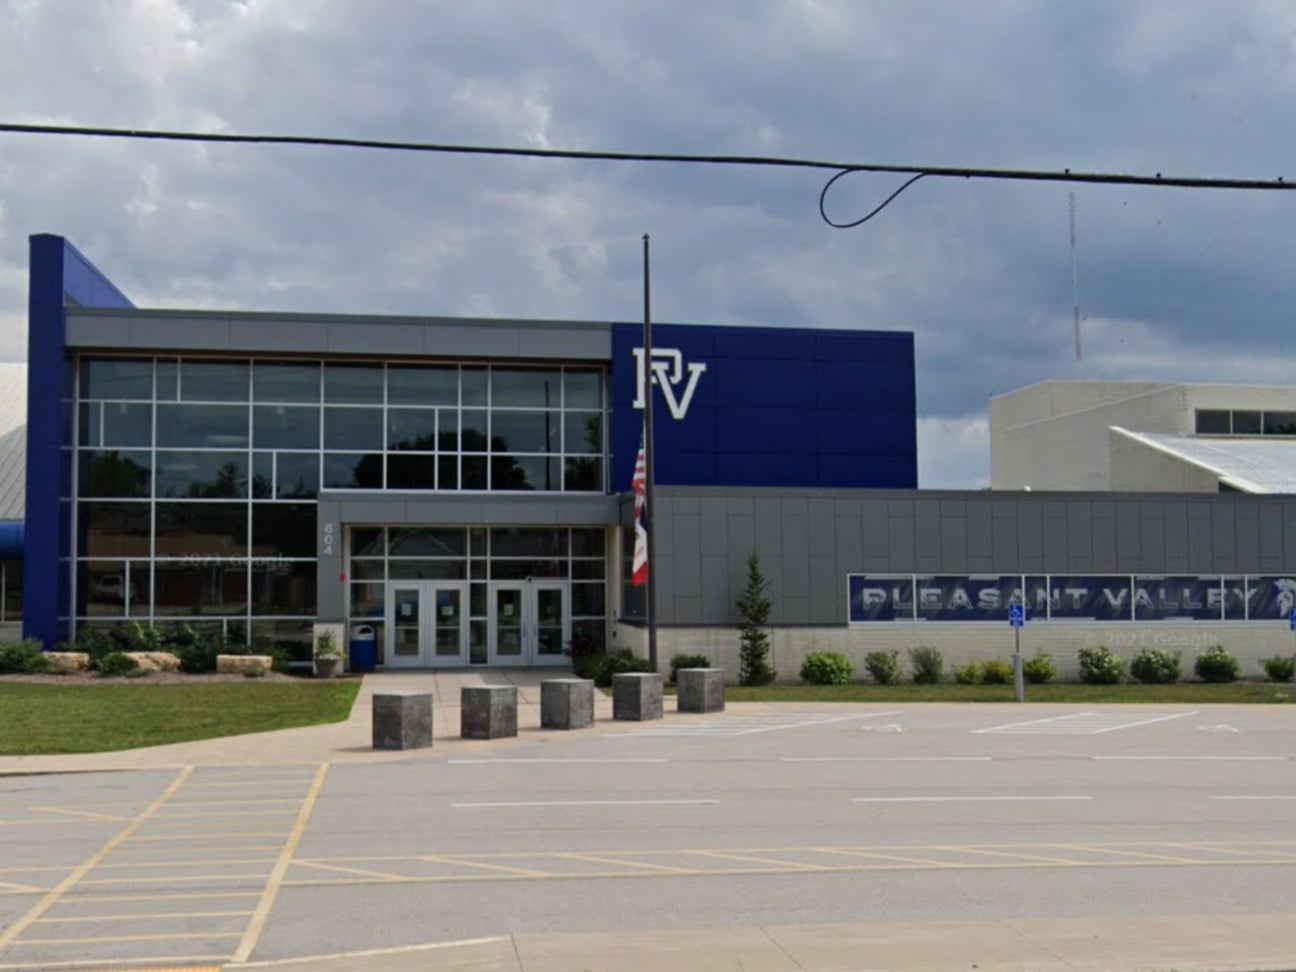 Pleasant Valley High School in Bettendorf, Iowa